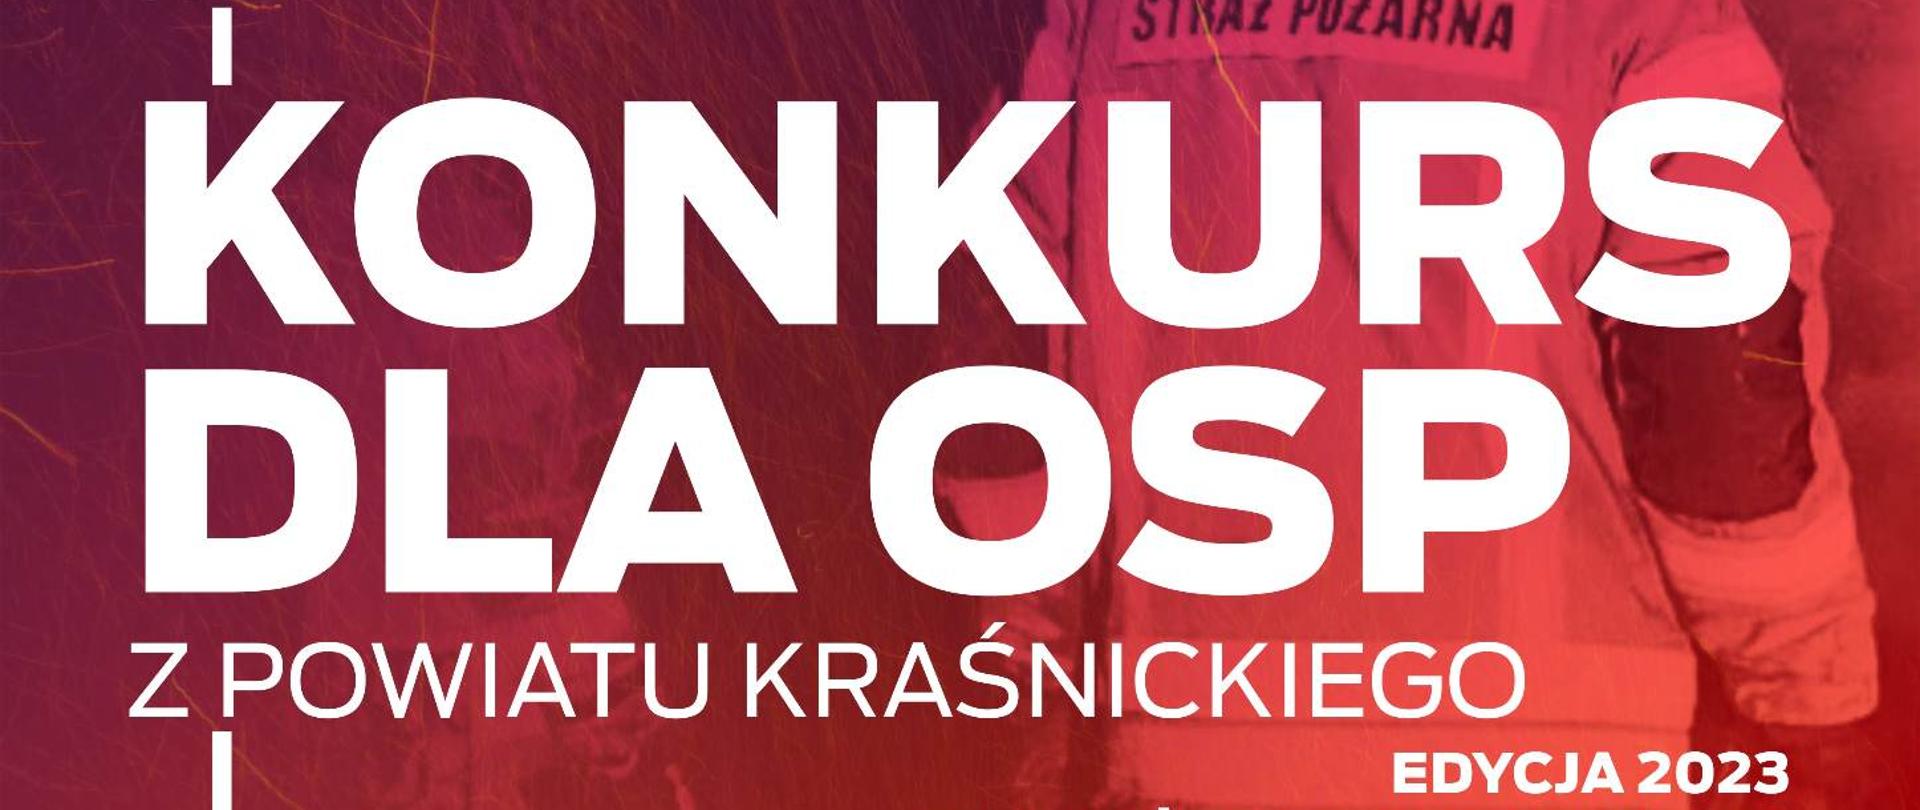 Konkurs dla OSP z powiatu kraśnickiego - plakat